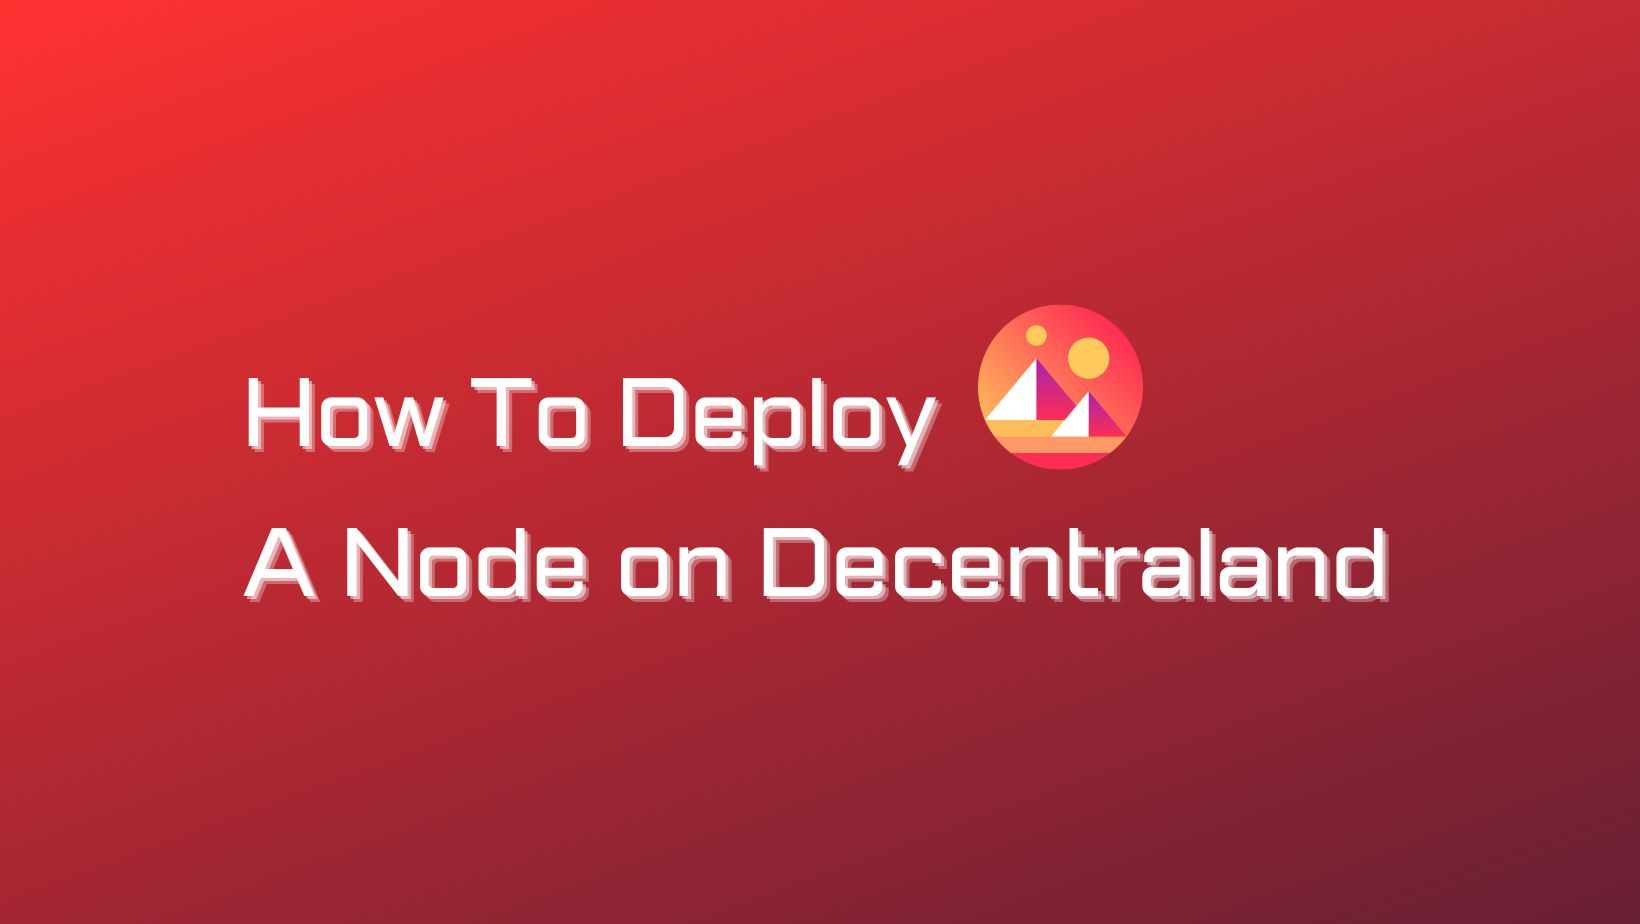 How To Deploy A Decentraland Node